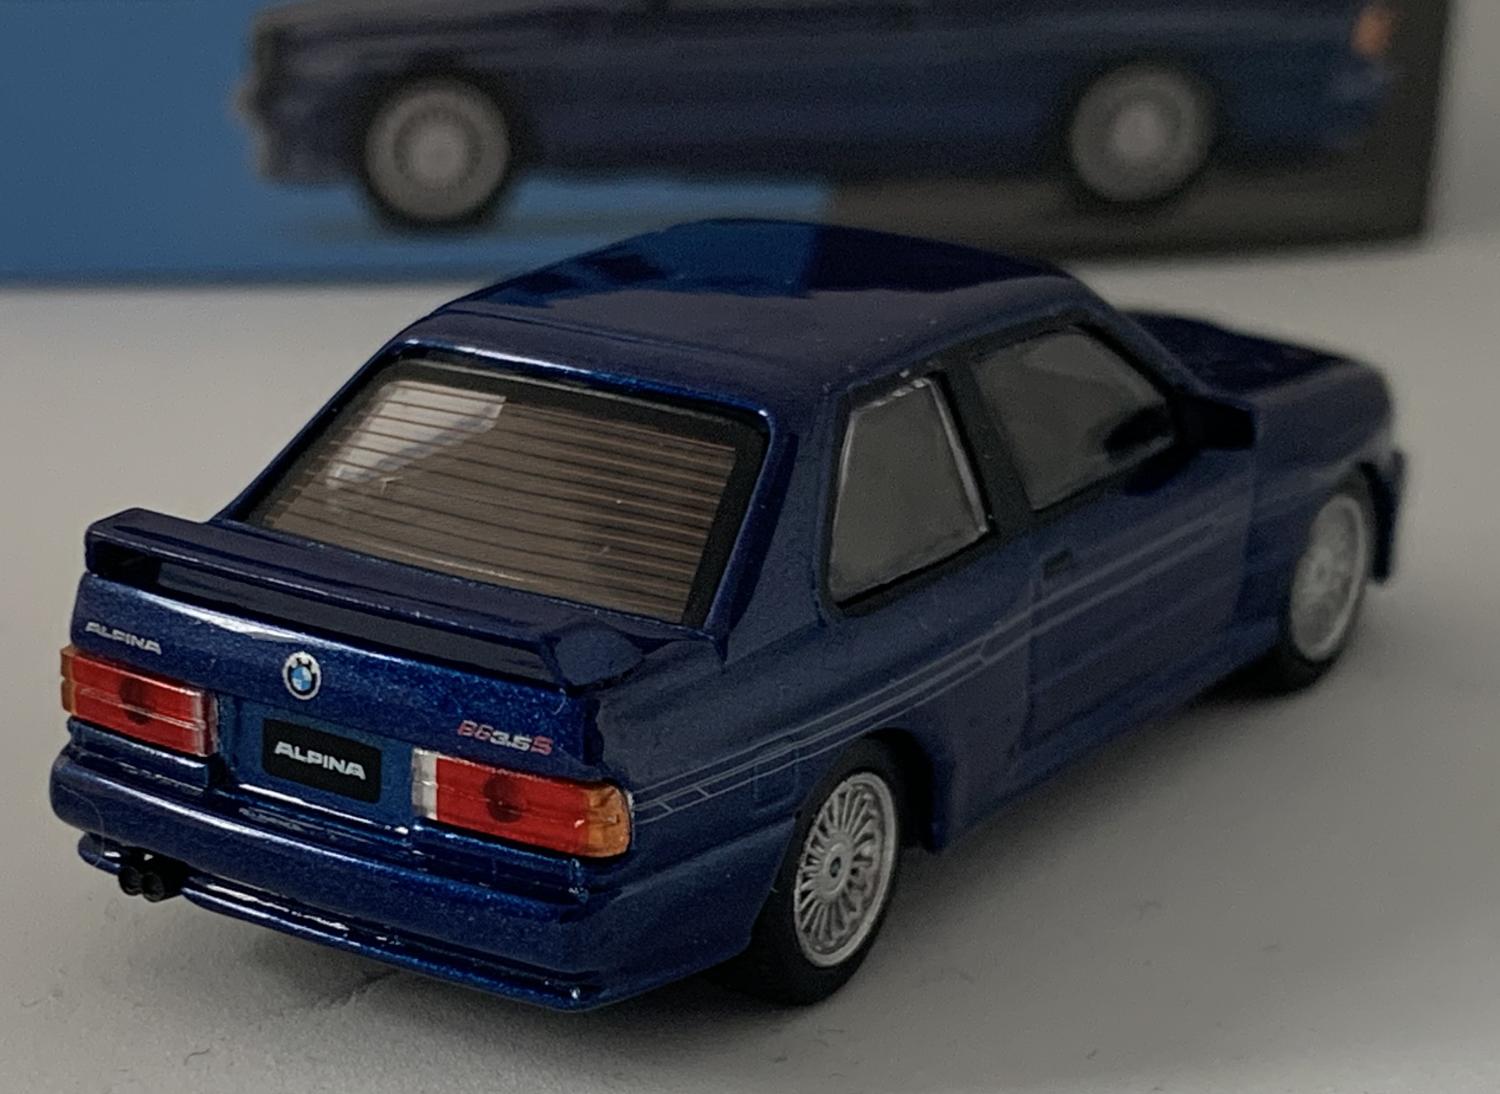 BMW M3 (E30) Alpina B6 3.5S in alpina blue 1:64 scale model from Mini GT, RHD